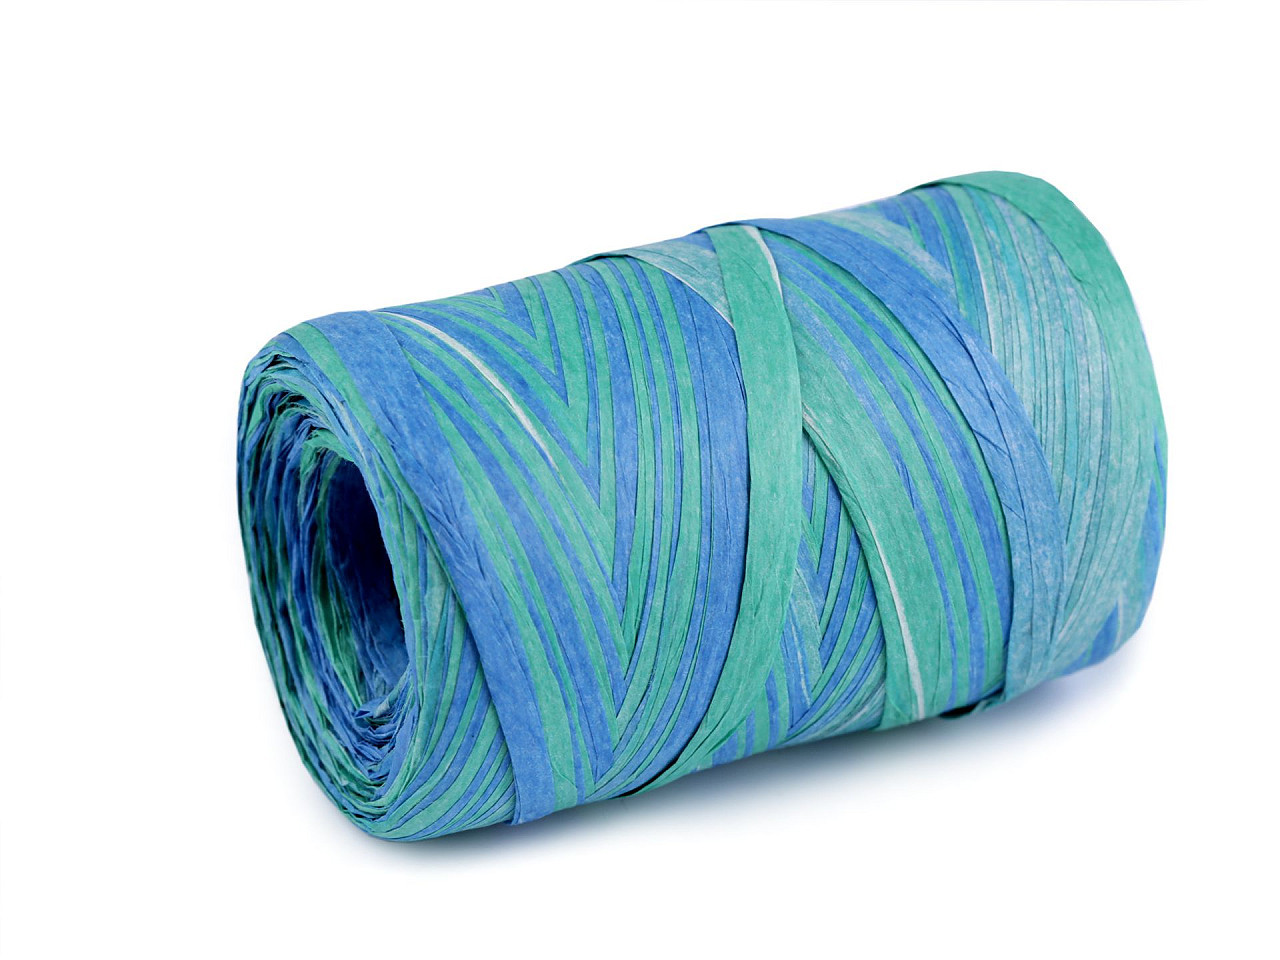 Lýko rafie k pletení tašek multicolor, šíře 5-8 mm, barva 5 modrá azuro zelená